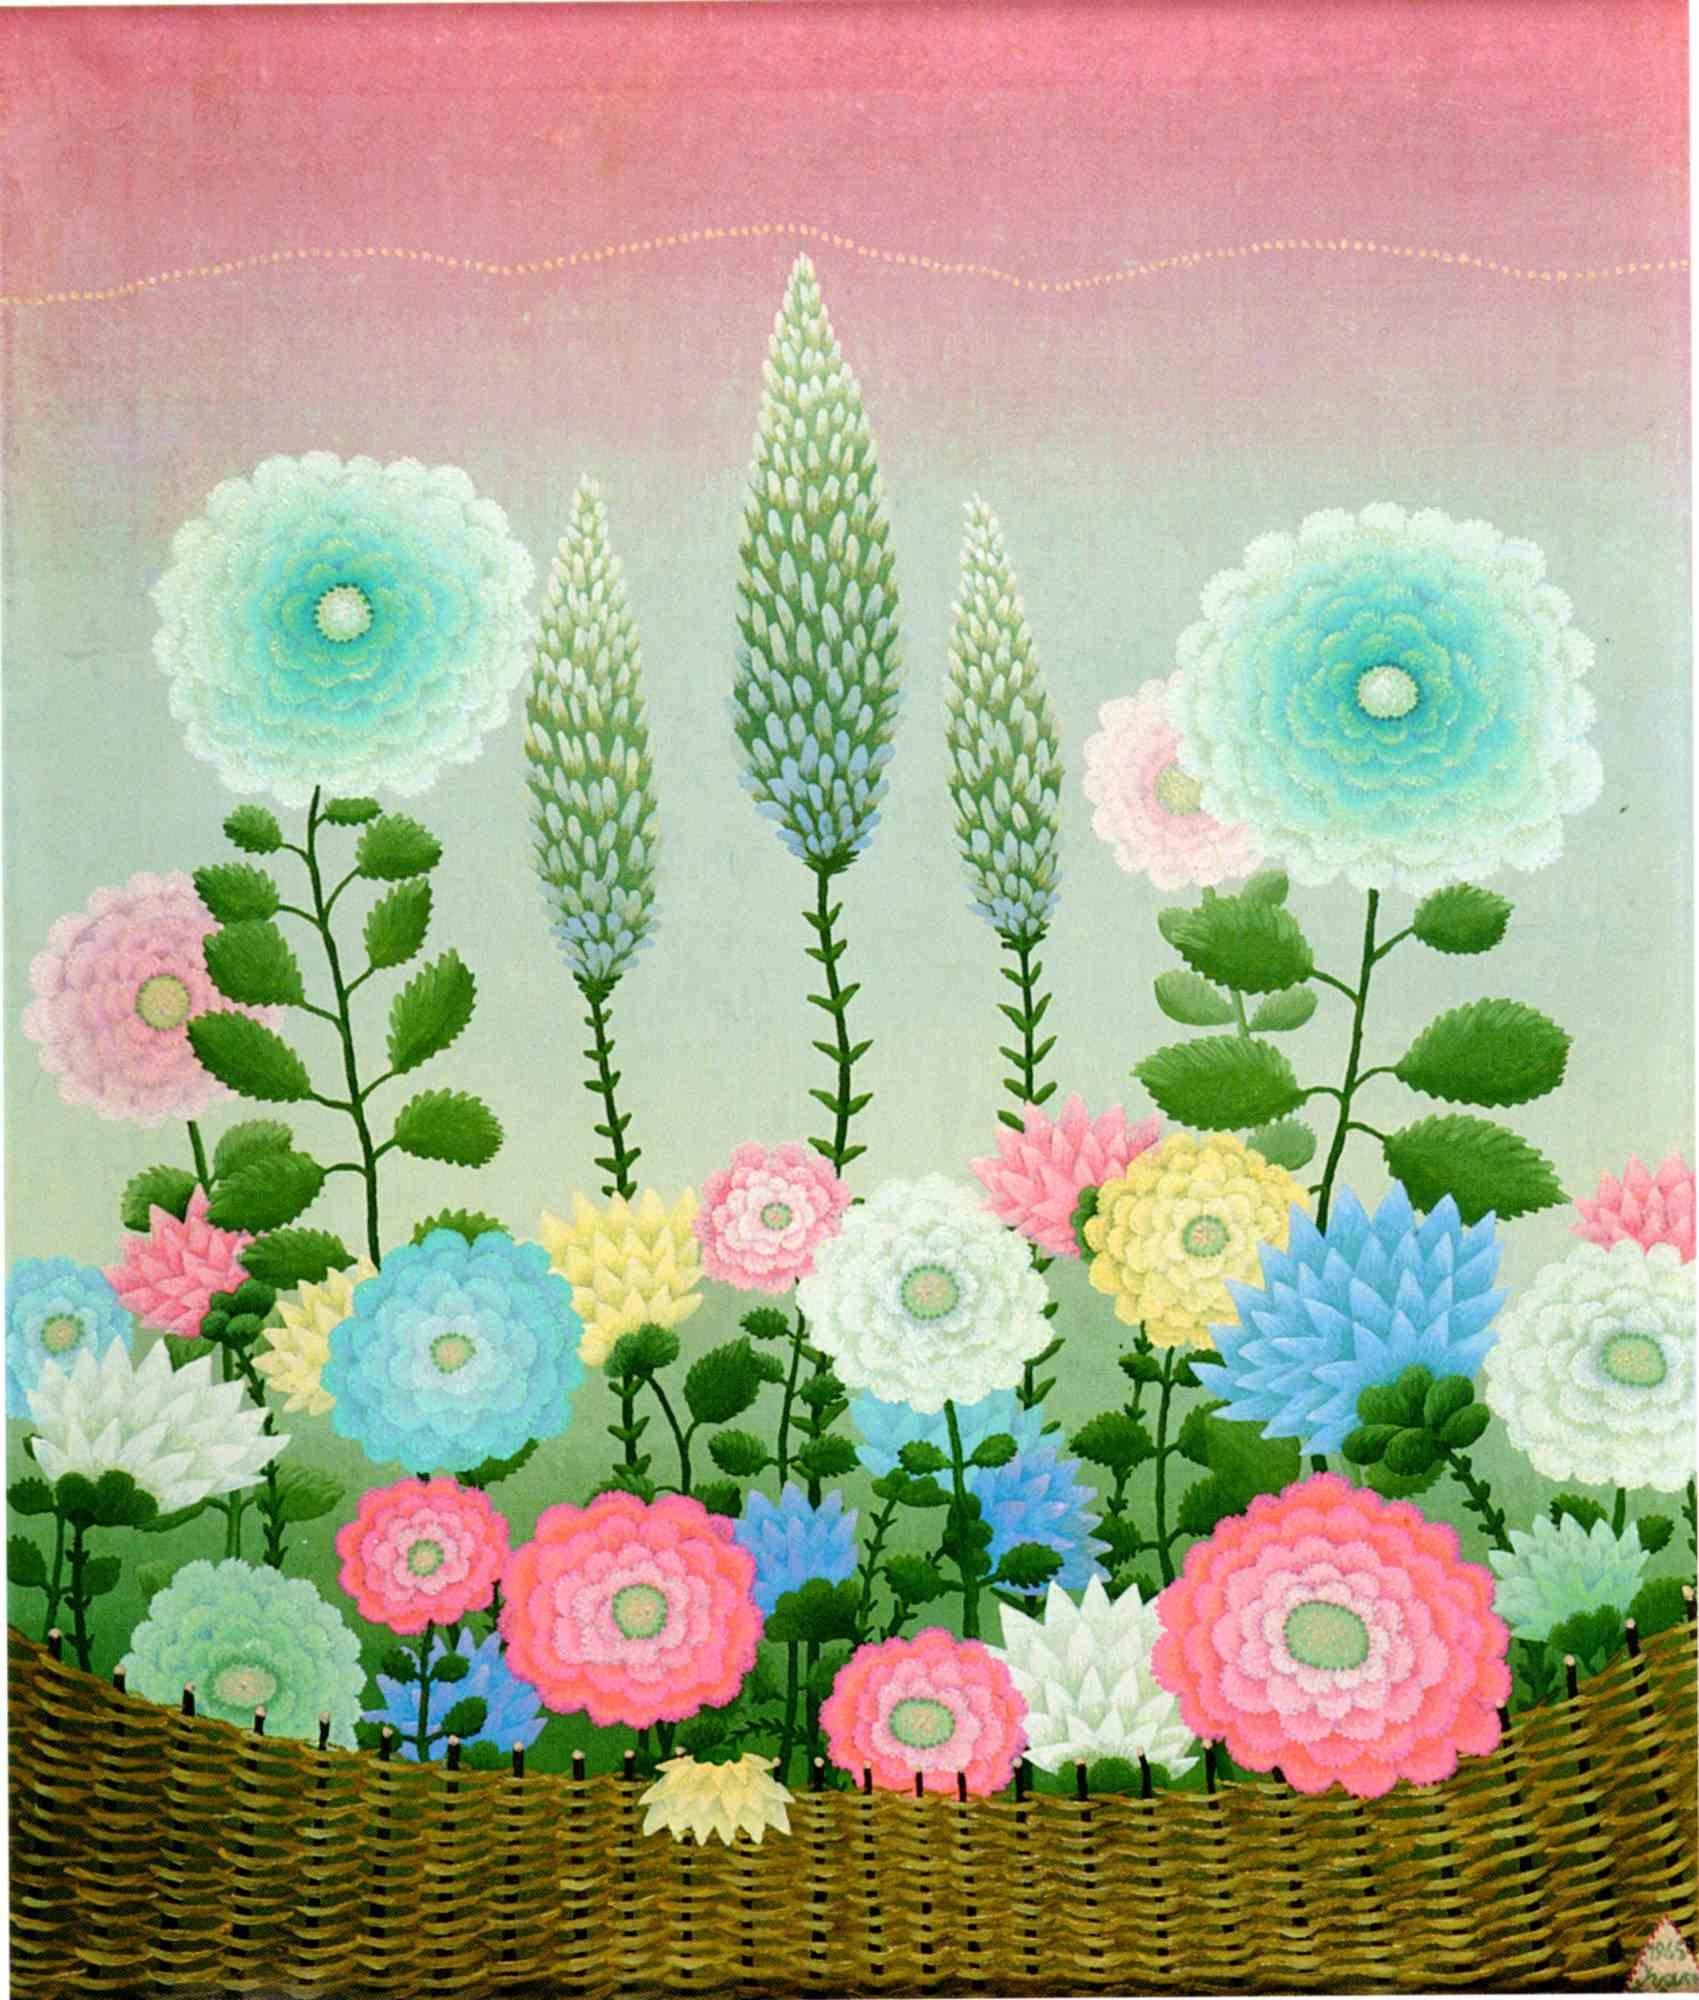 Wild Flowers - Oil in Canvas by Ivan Rabuzin - 1965